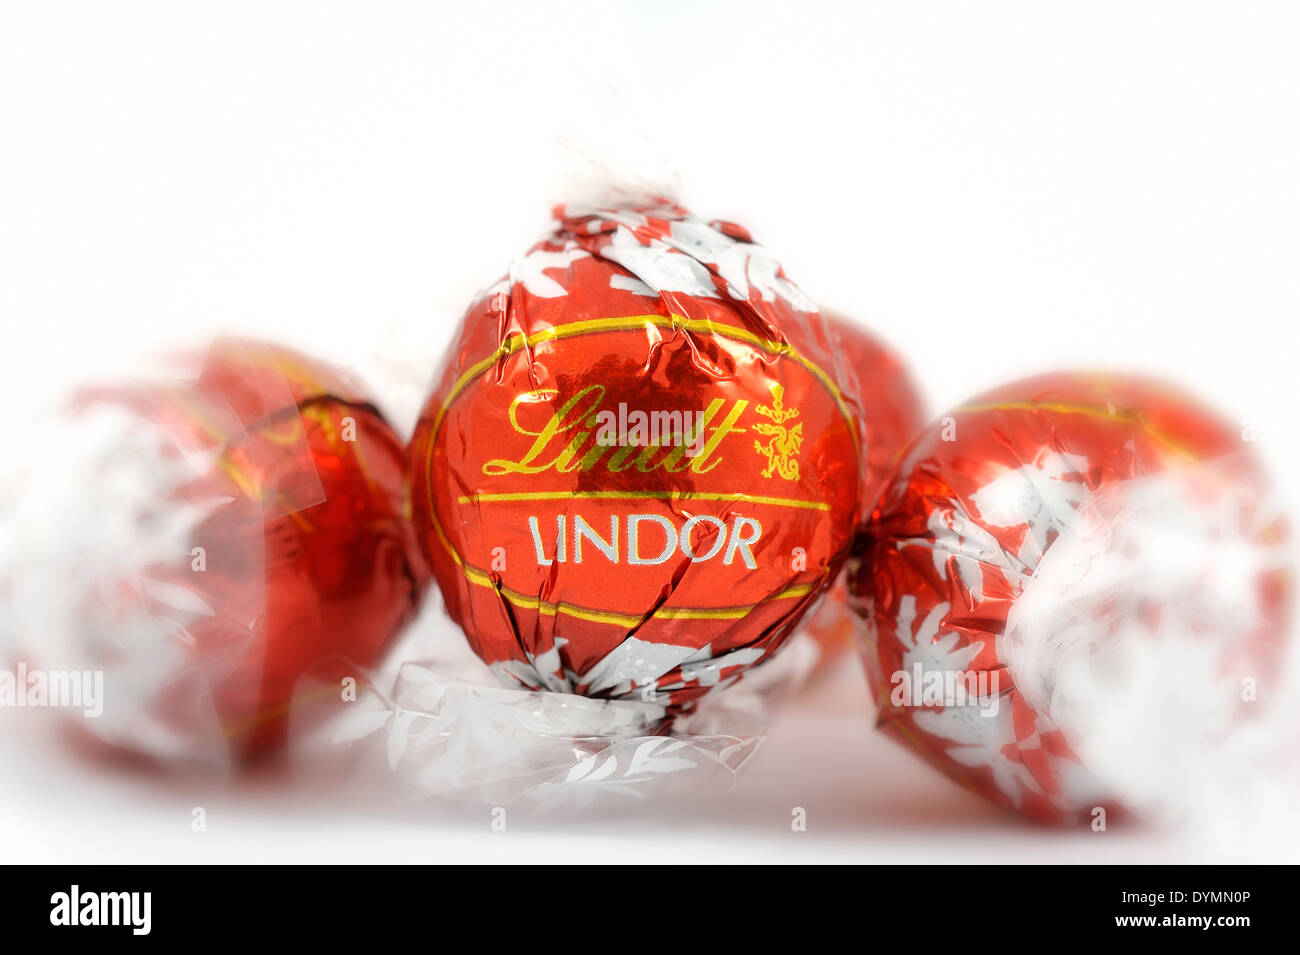 Chocolats emballés Lindor Lindt Banque D'Images